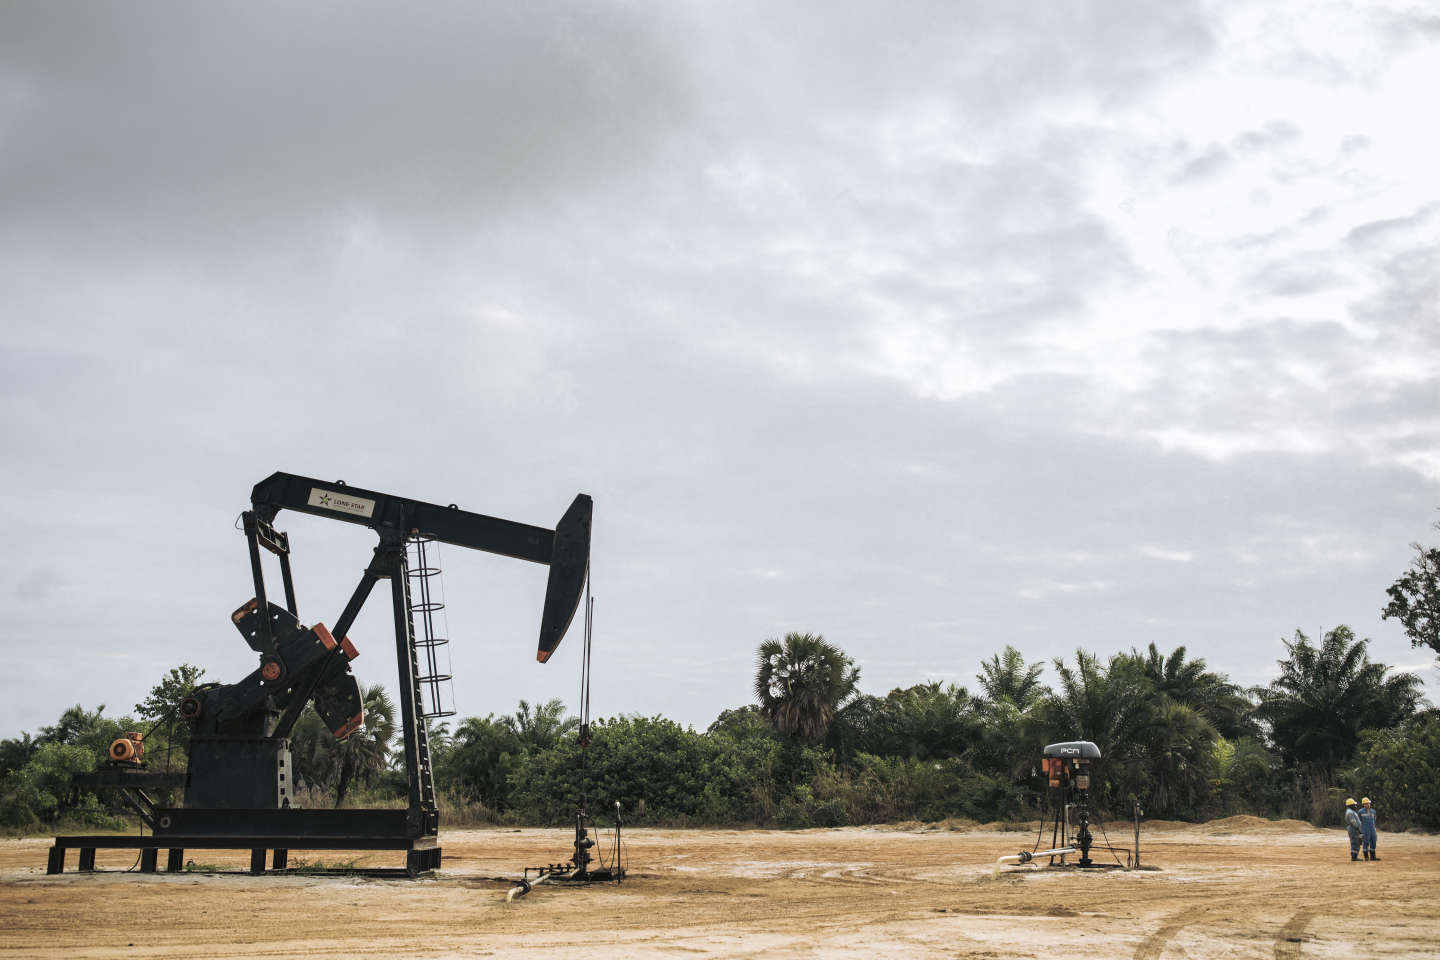 Kinshasa ouvre la voie à l’exploitation pétrolière dans la cuvette centrale congolaise, riche en tourbières